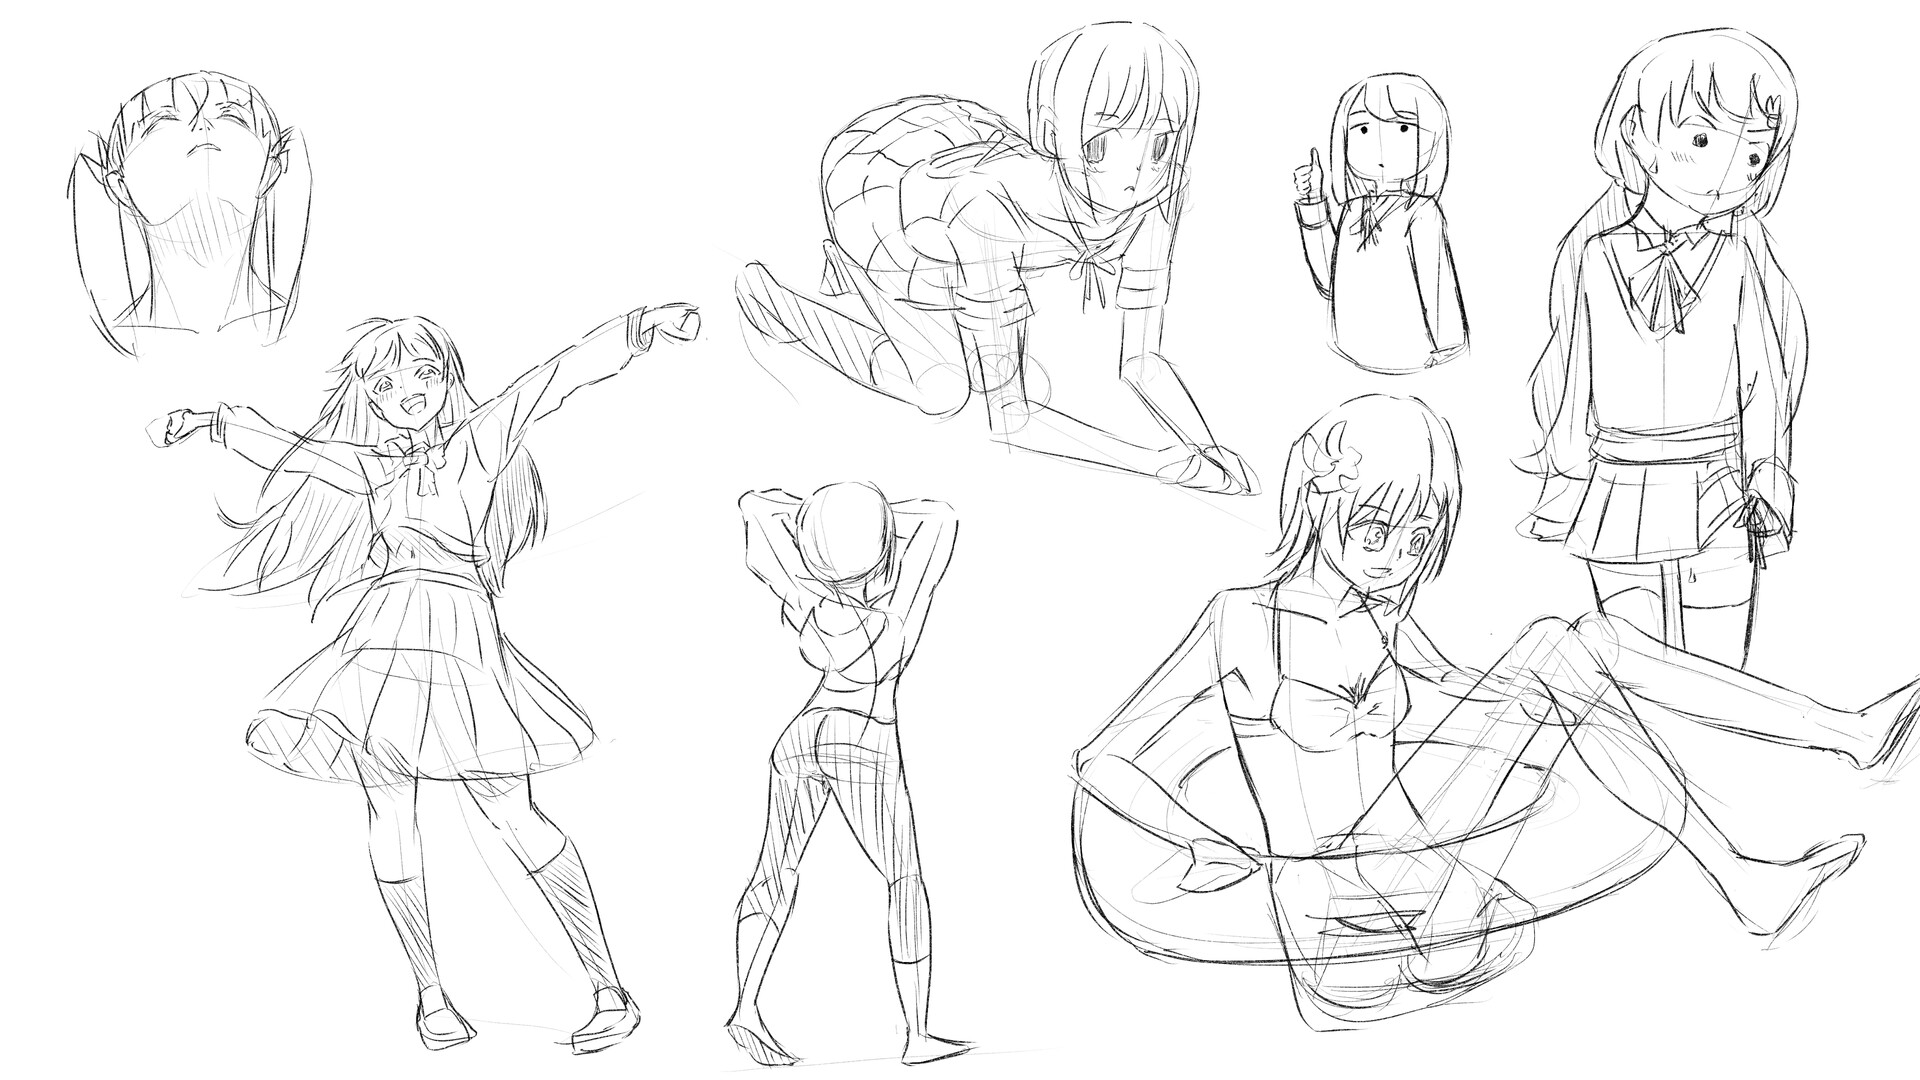 Practice anime random pose drawing. #practicedrawing #ibispaintx #fypシ